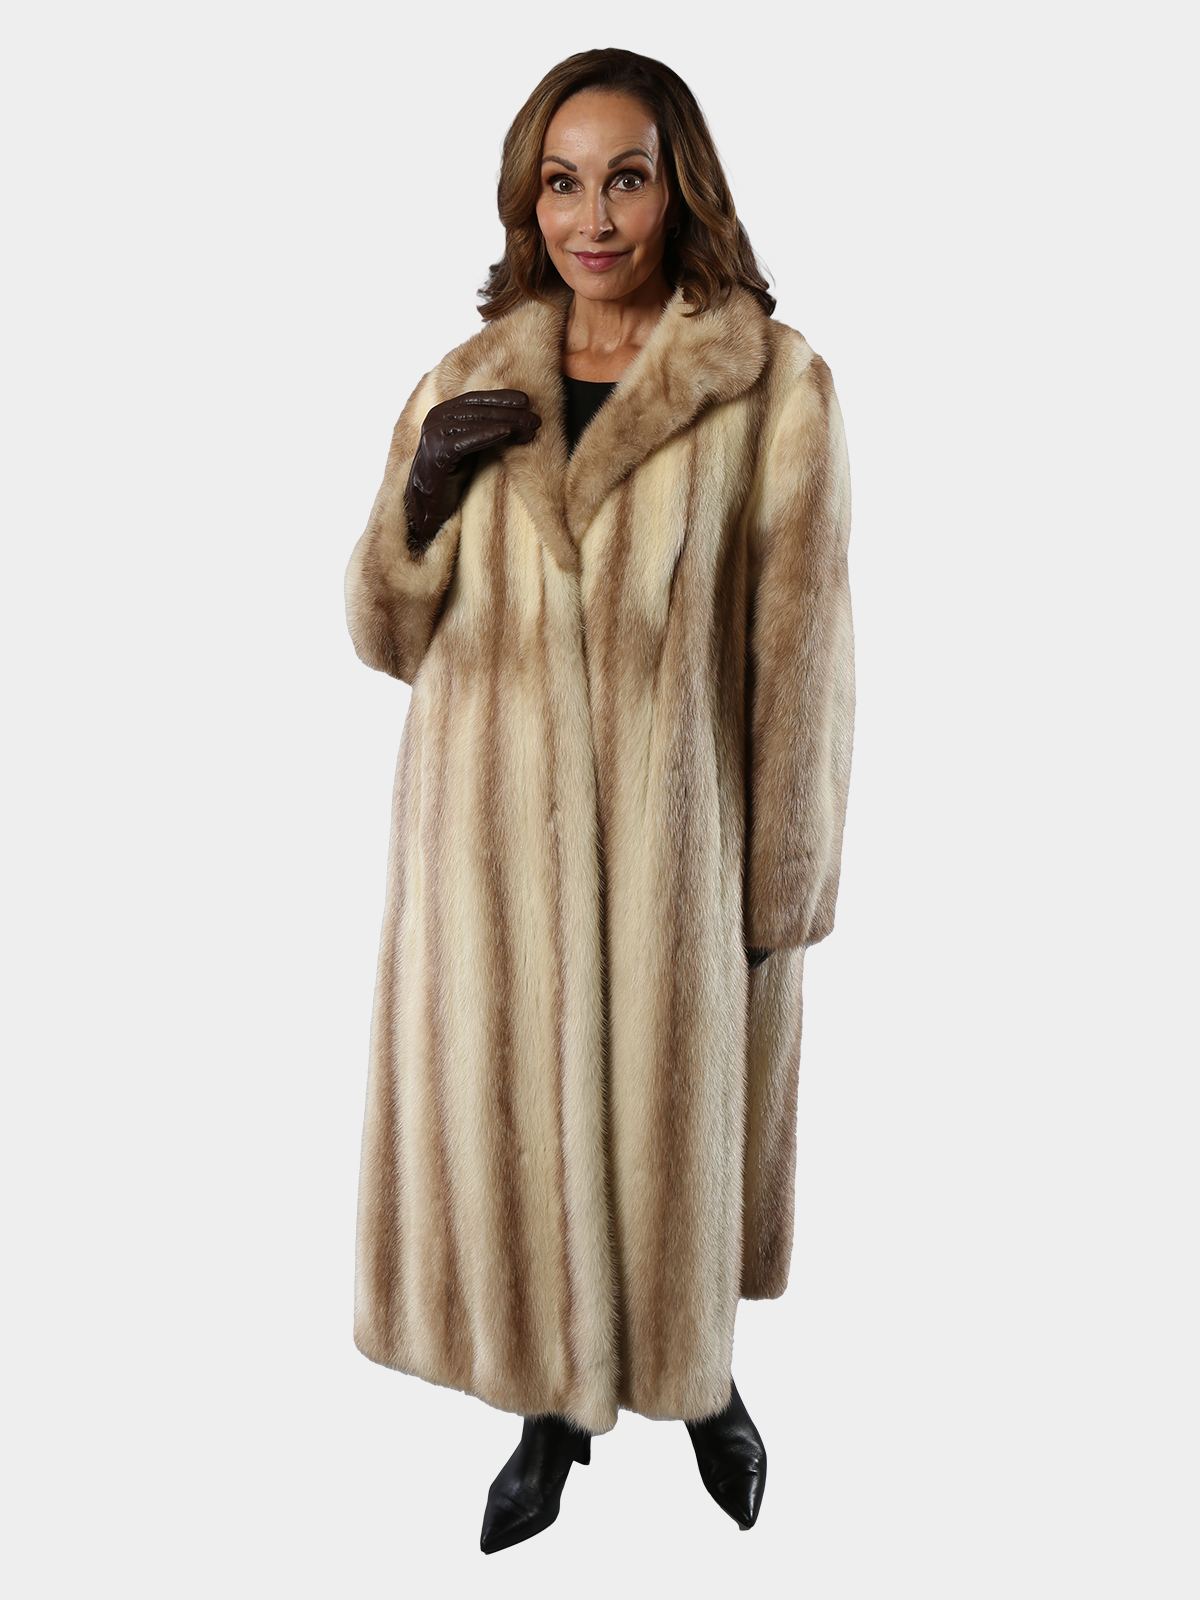 fur coat women - OFF-51% > Shipping free